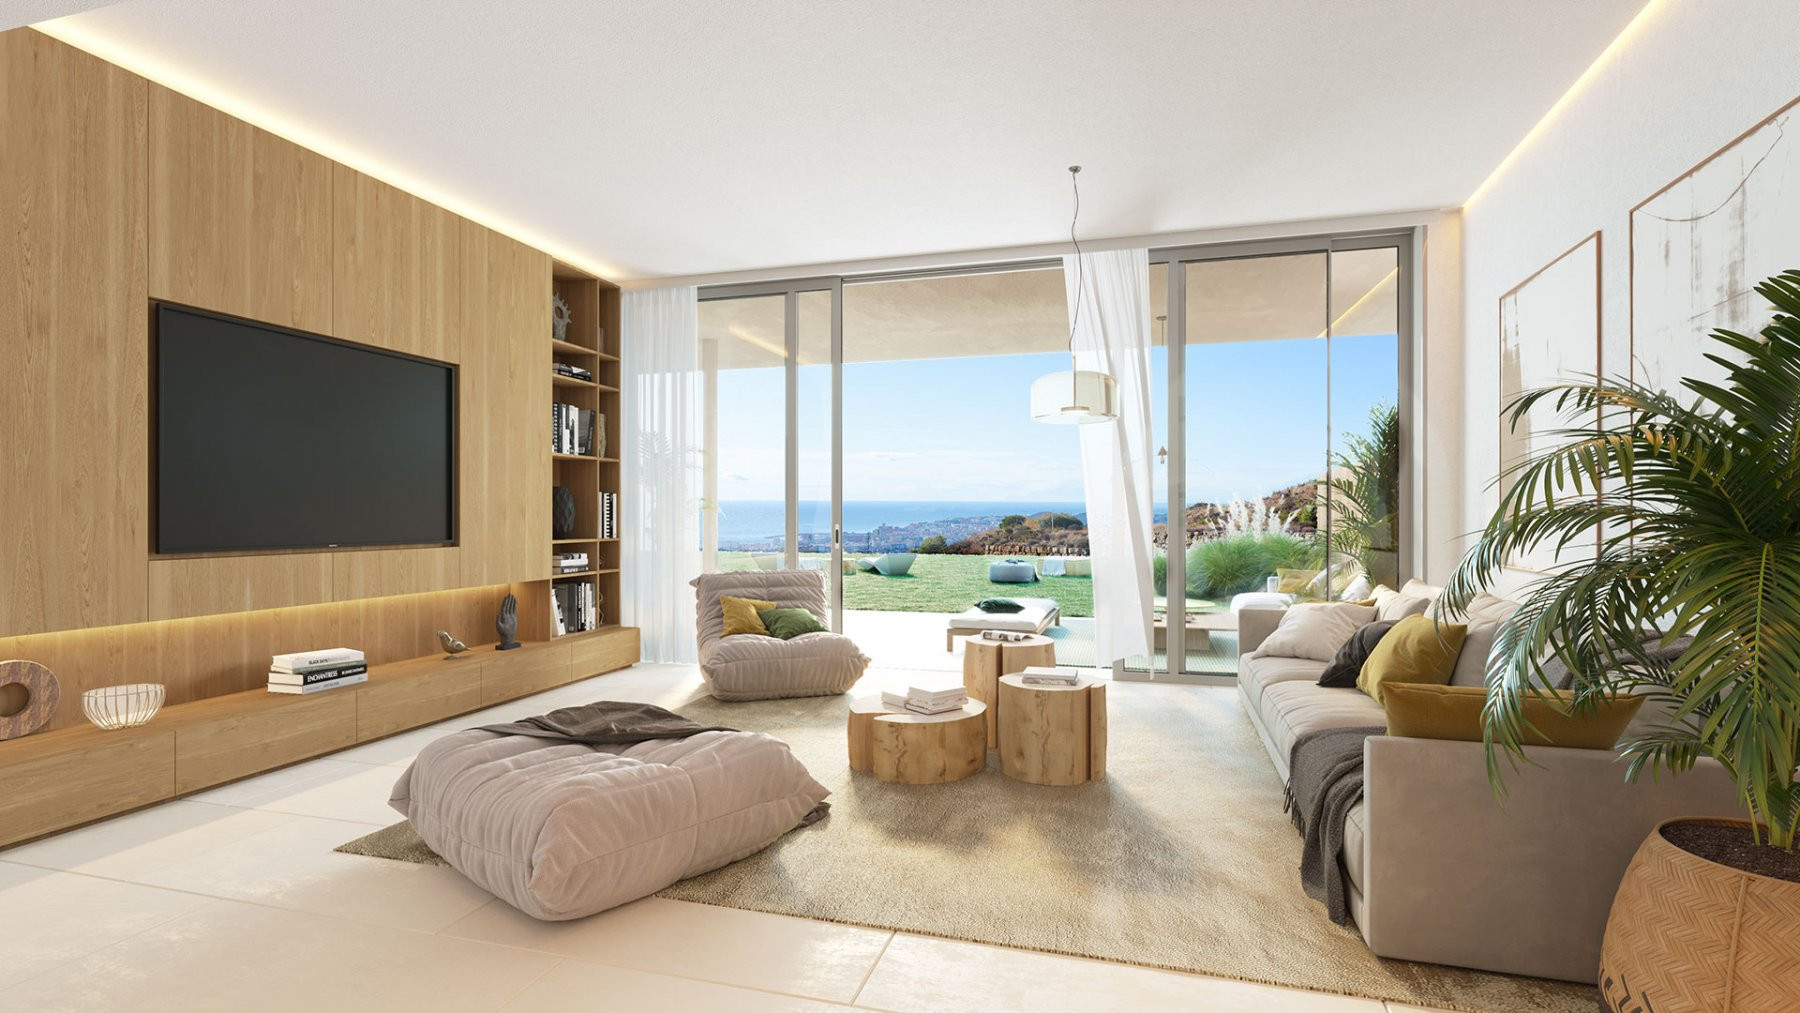 Luxury three bedroom villa in El Higueron, Fuengirola. | Image 7